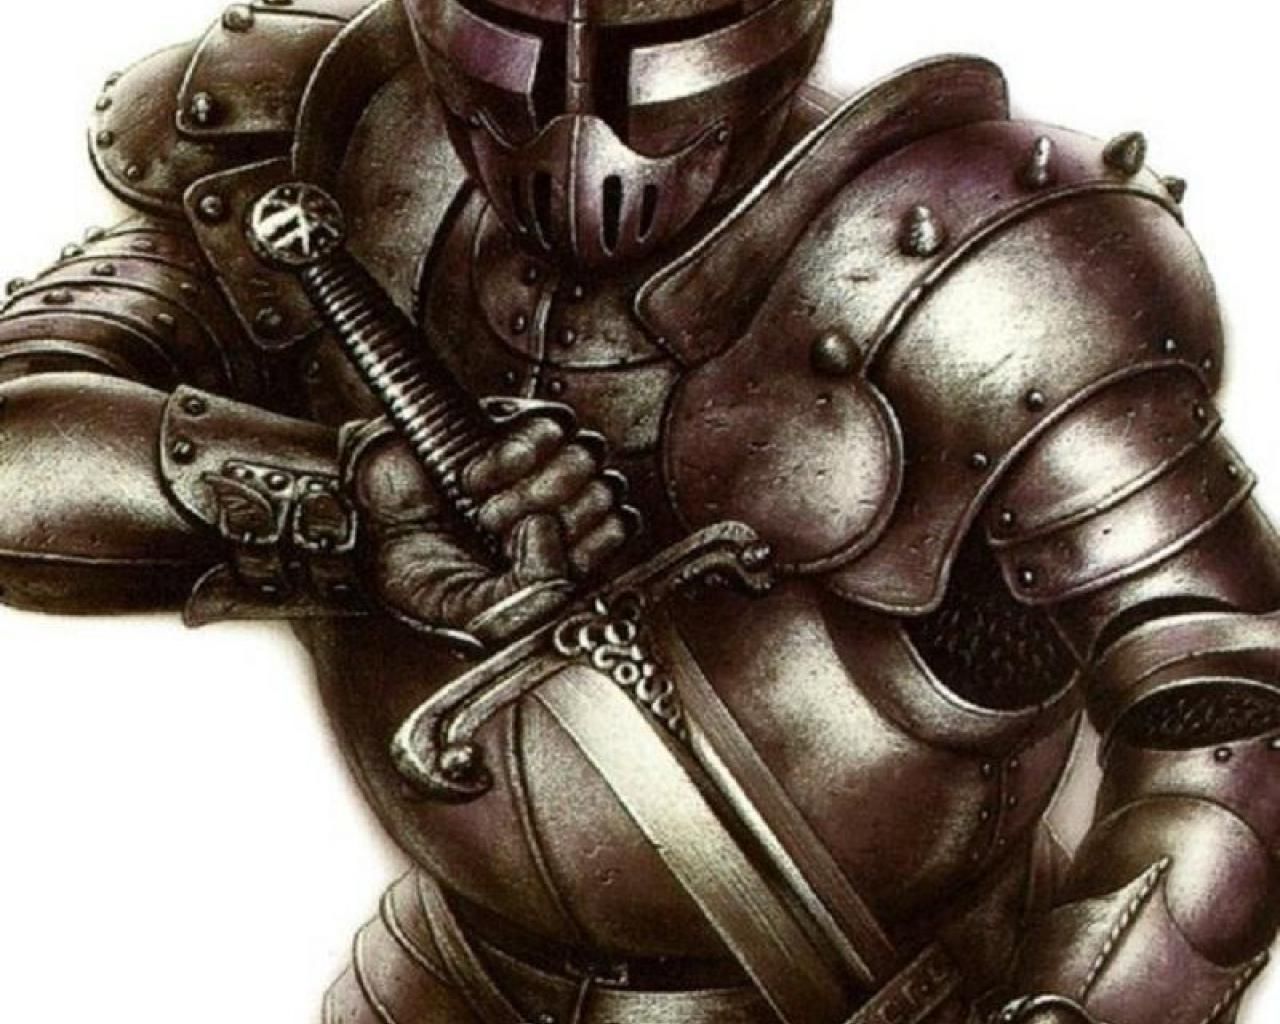 Fantasy Knight Armor Helmets. mediaeval tank wallpaper - Desktop Wallpaper. Tank wallpaper, Knight armor, Medieval